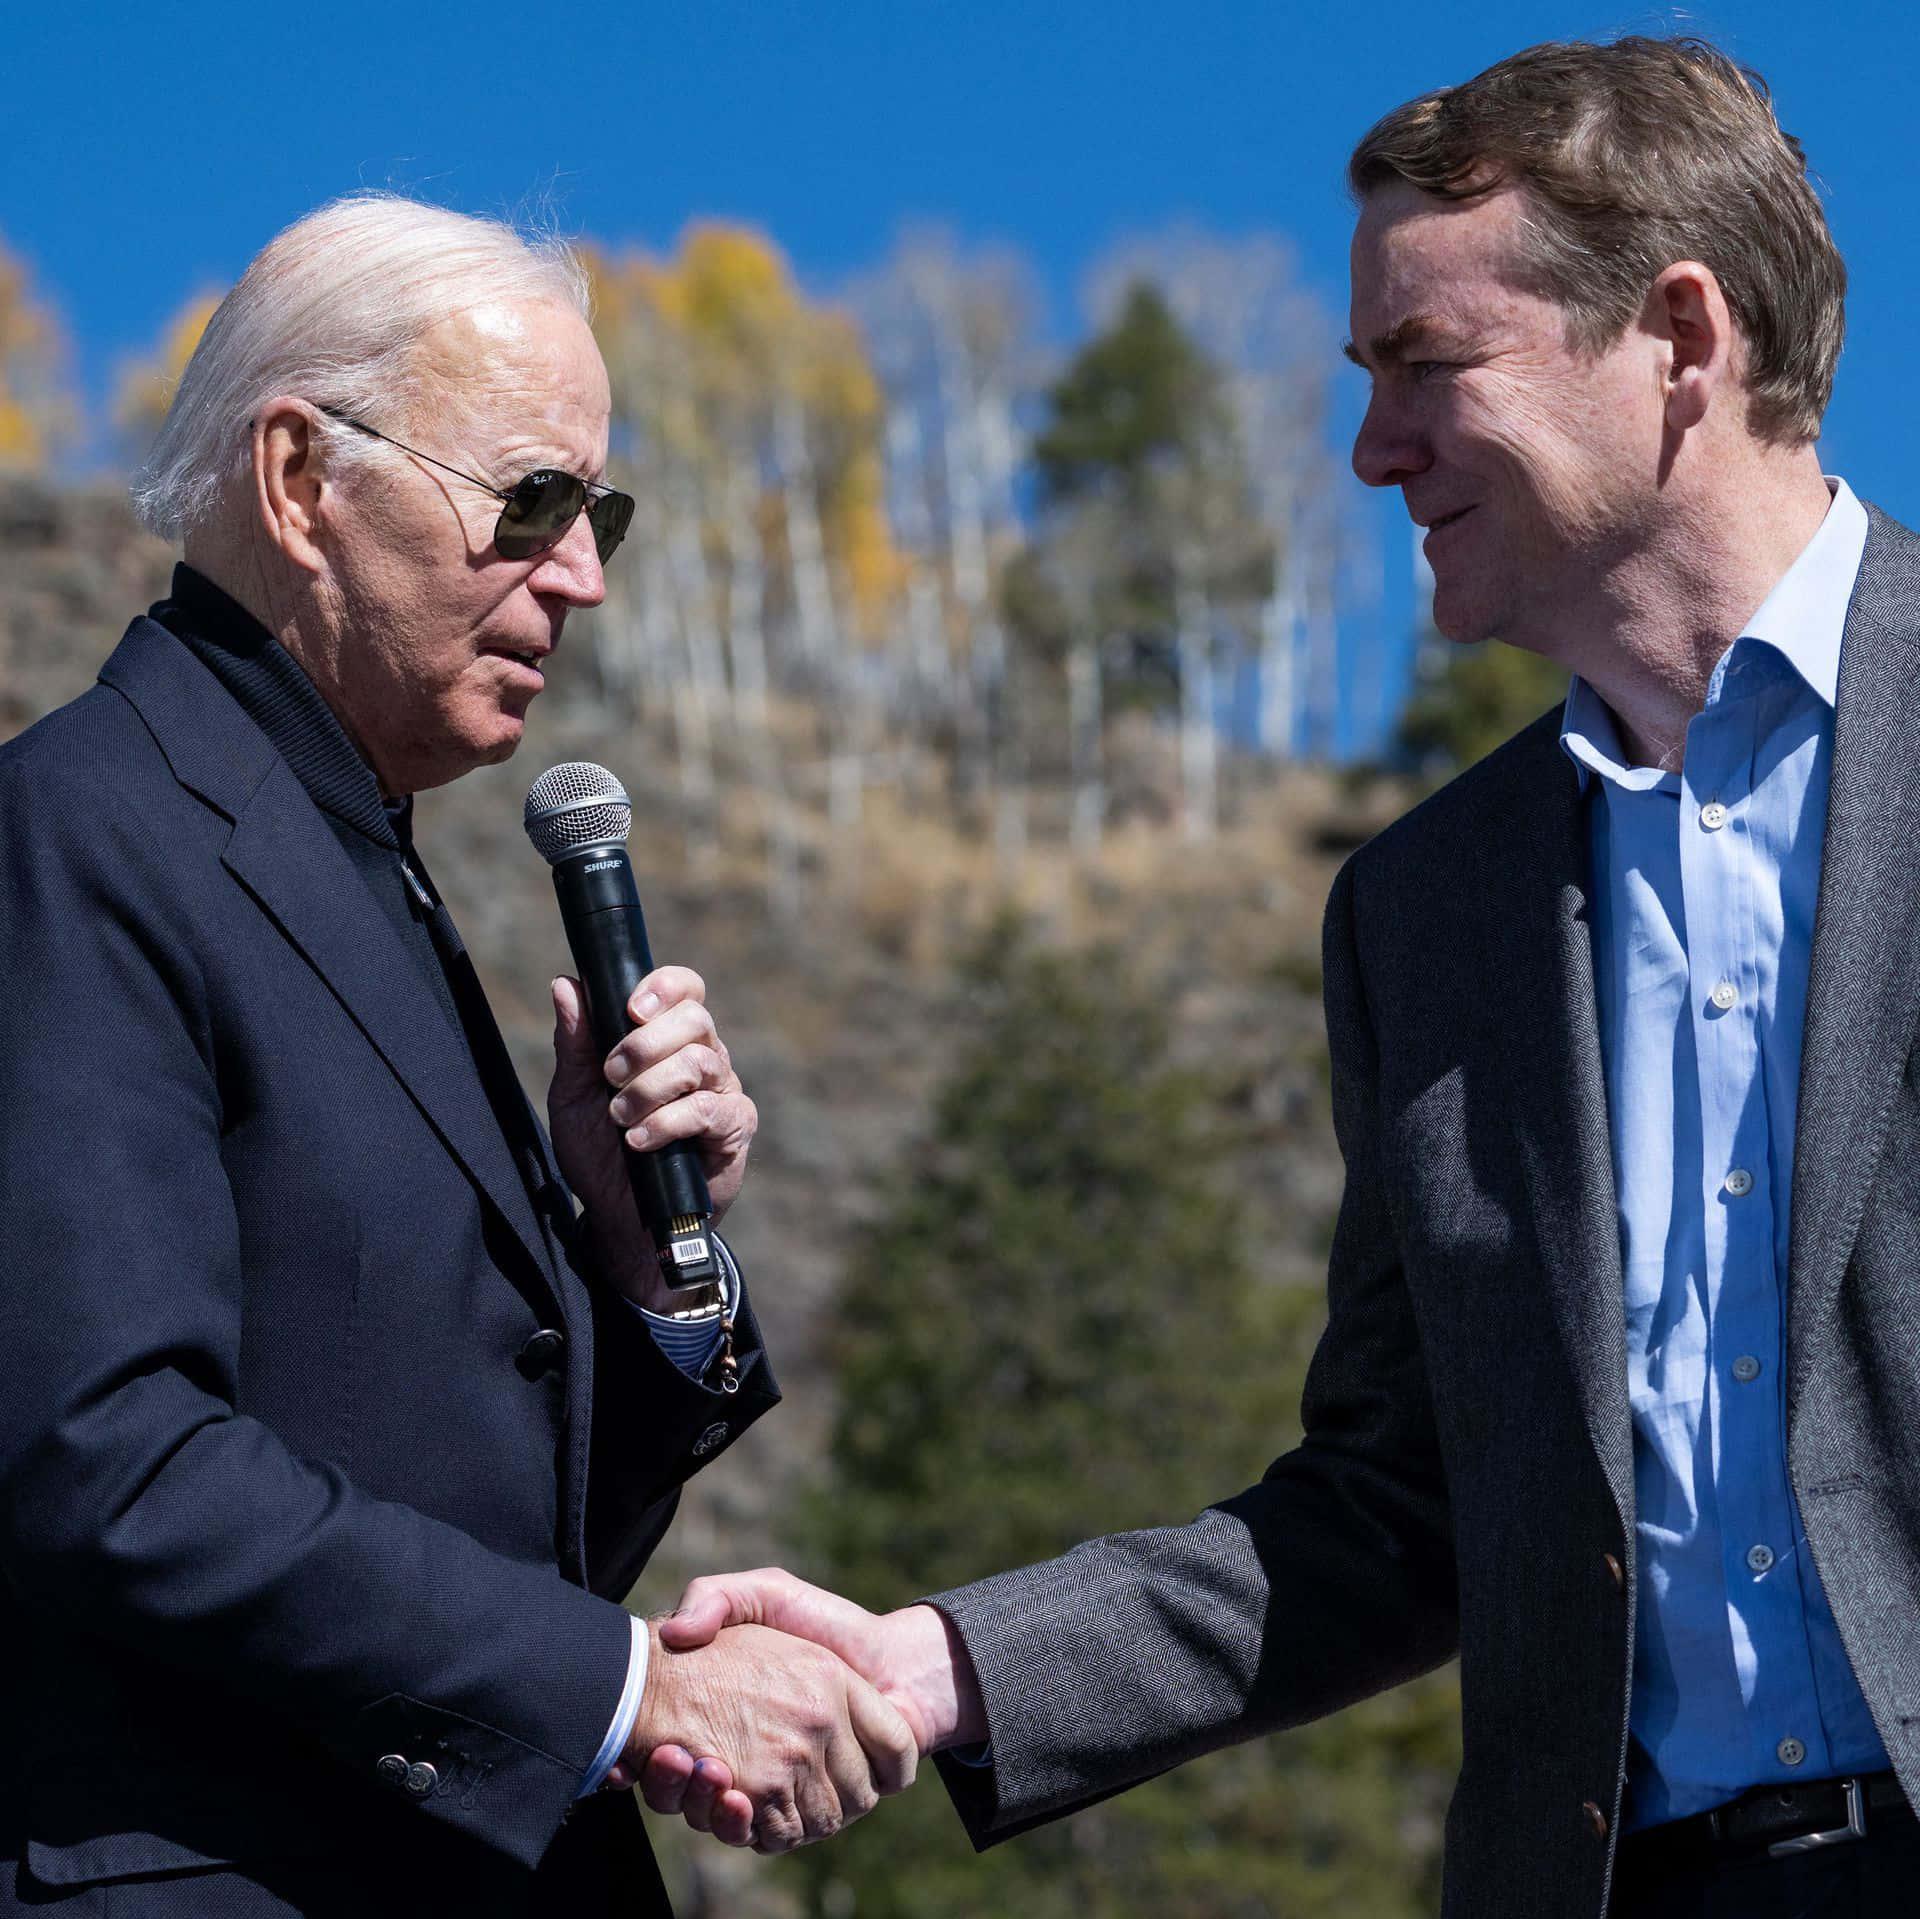 Senator Michael Ben Shaking Hands With Joe Biden